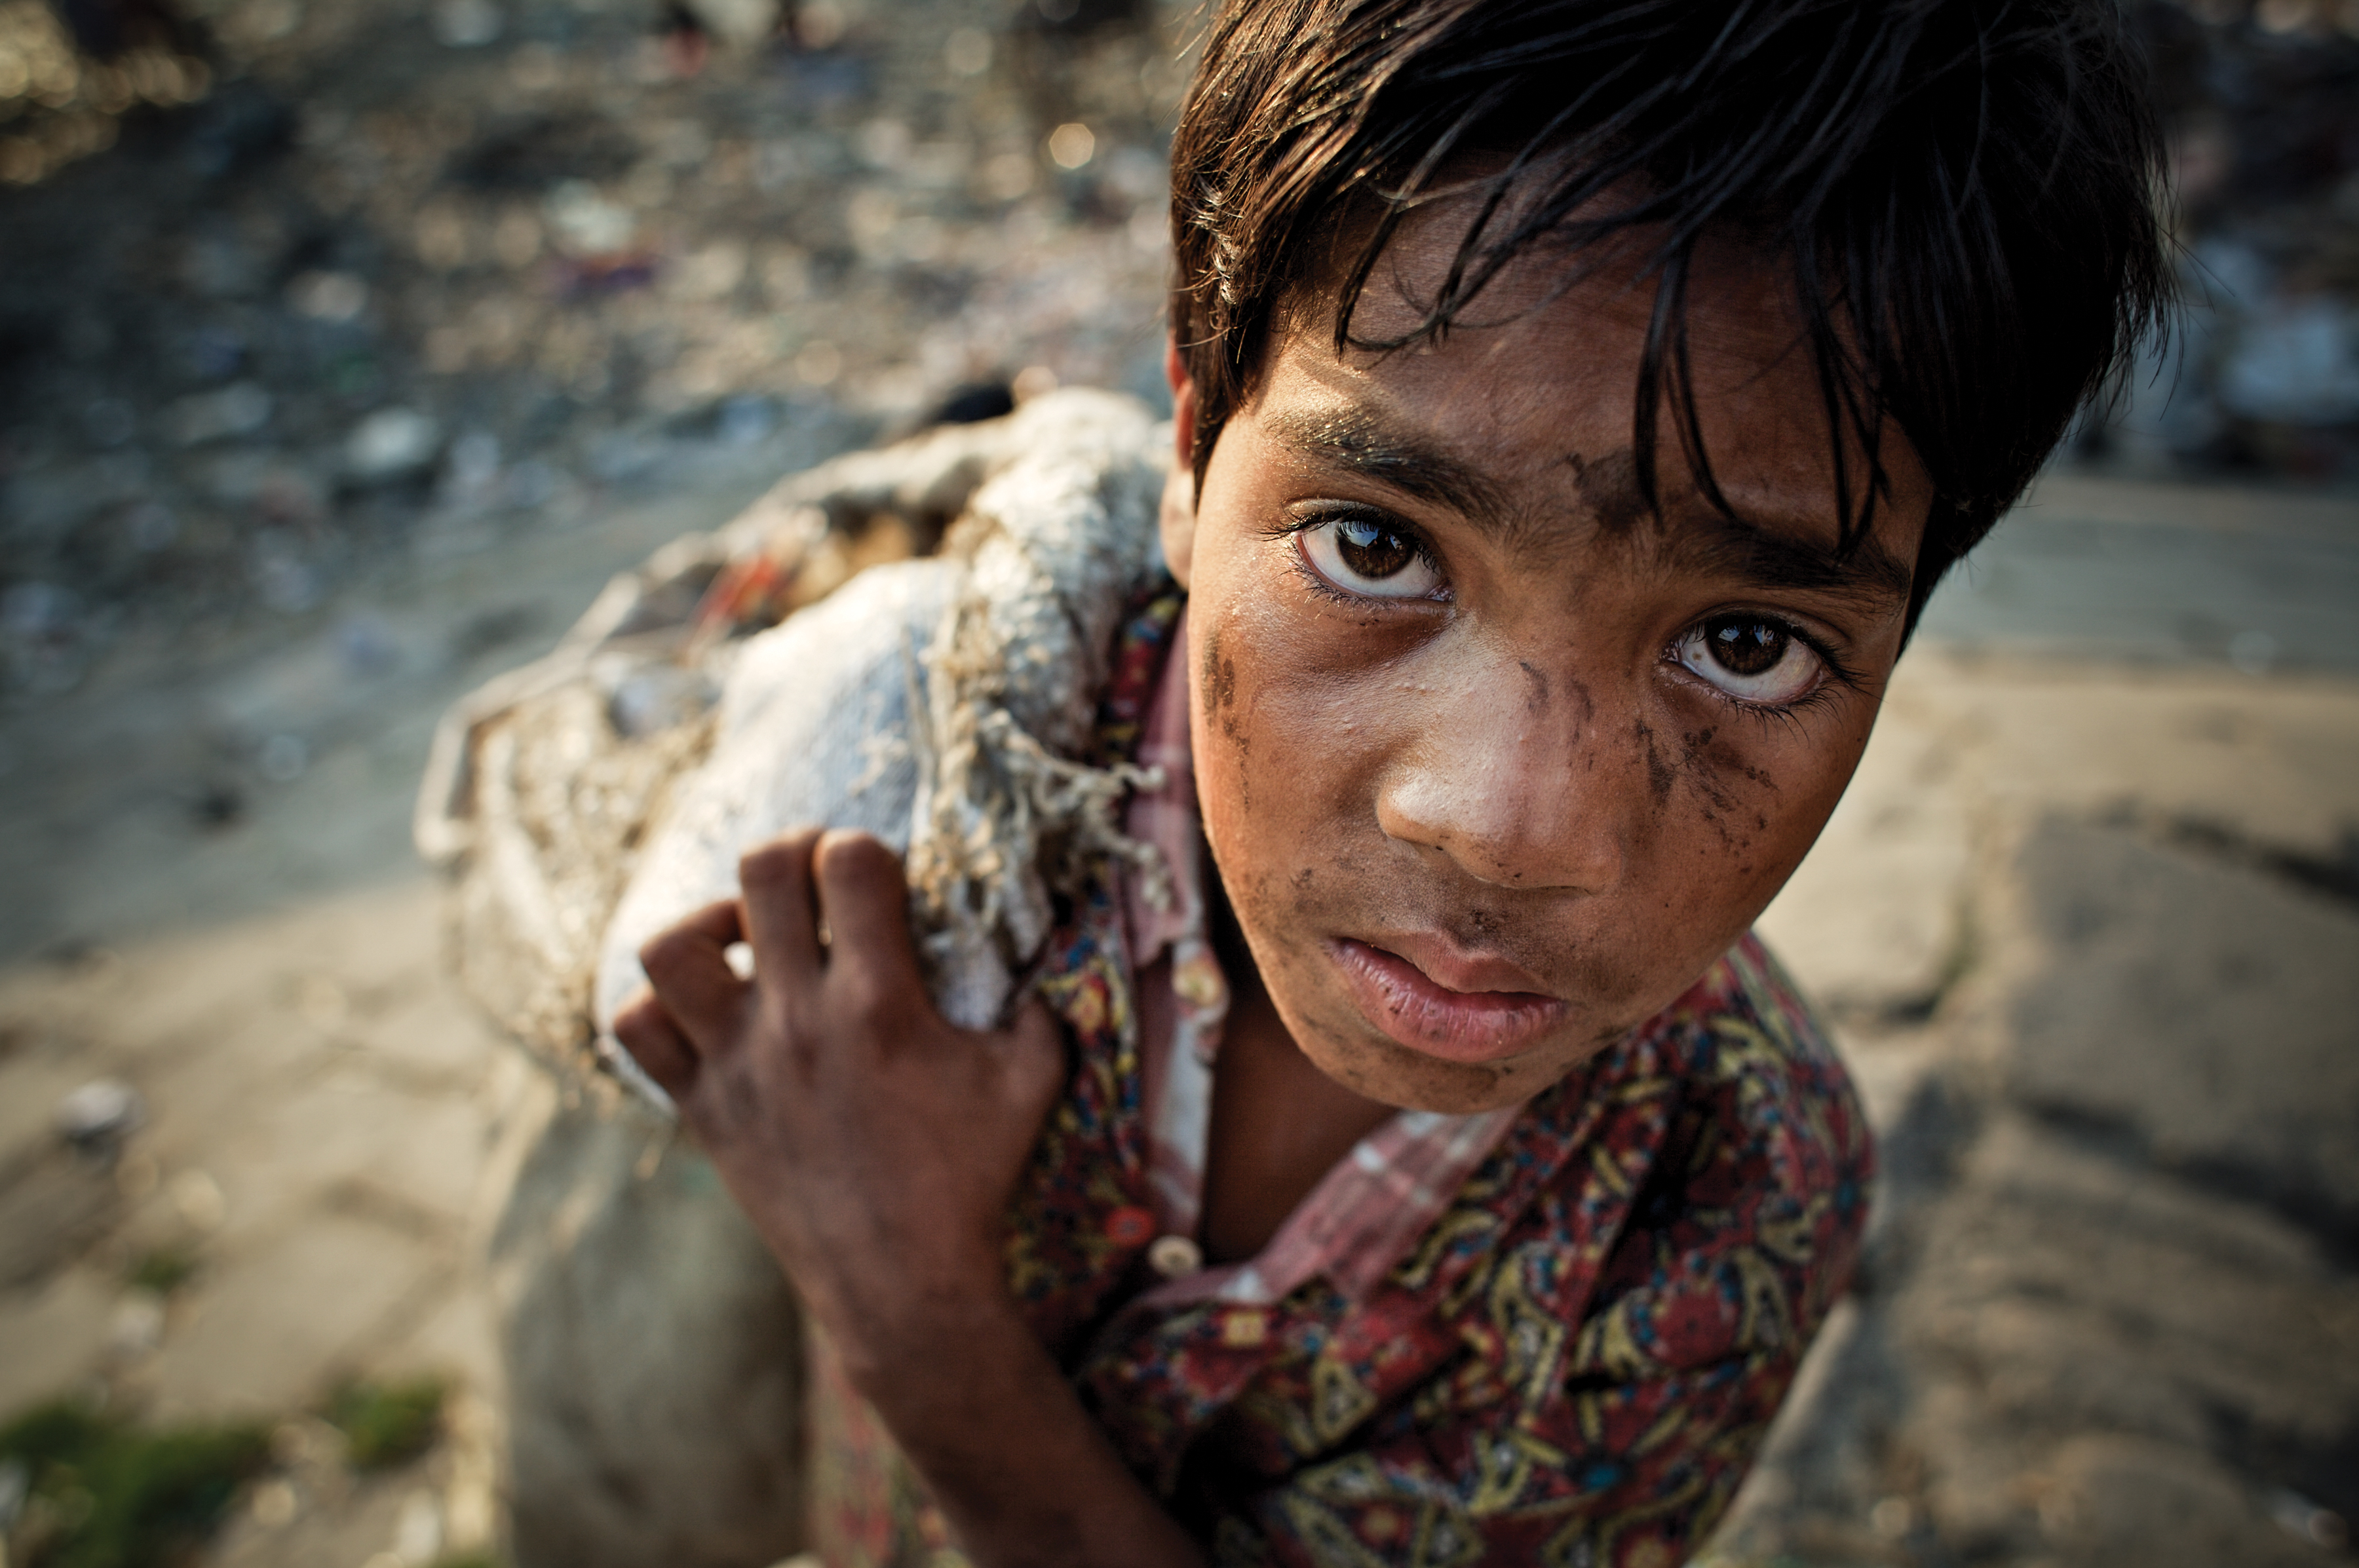 12 year-old-boy scavenging in Bangladesh.